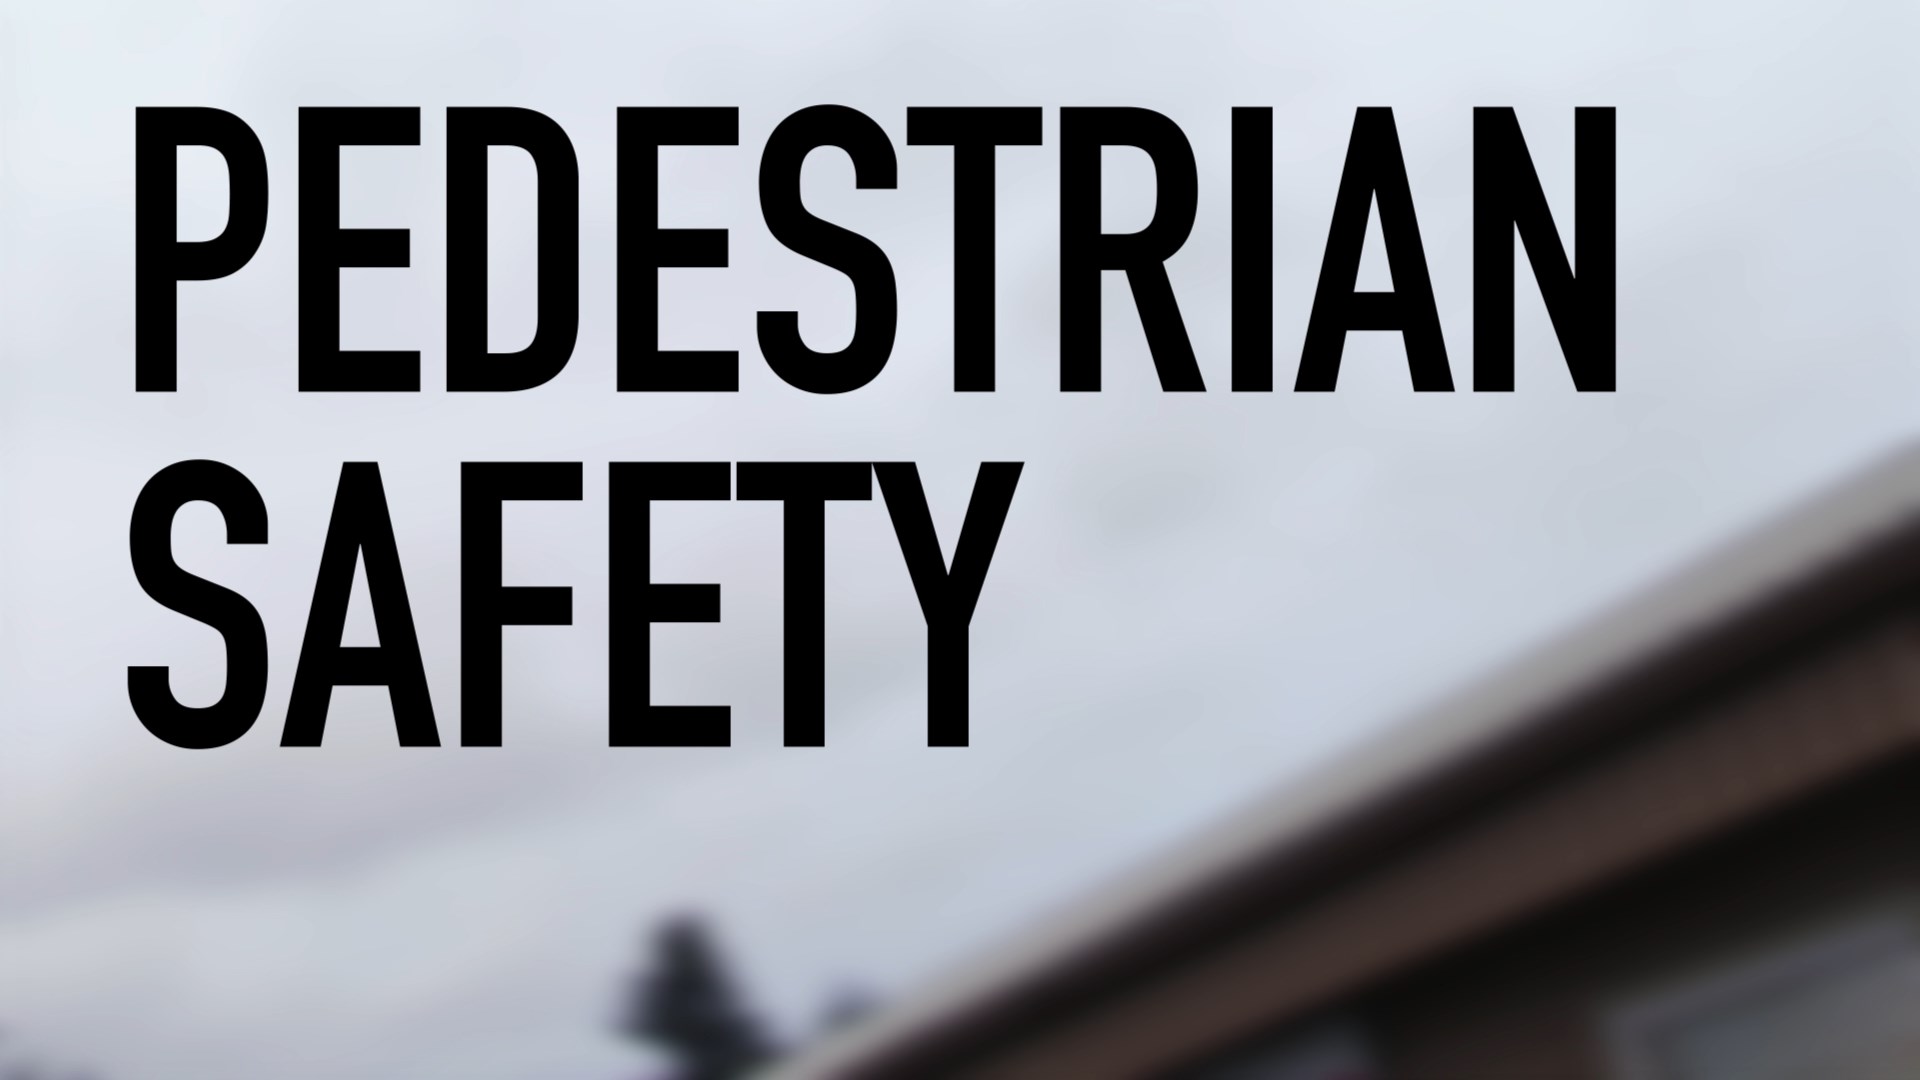 pedestrian safety title card